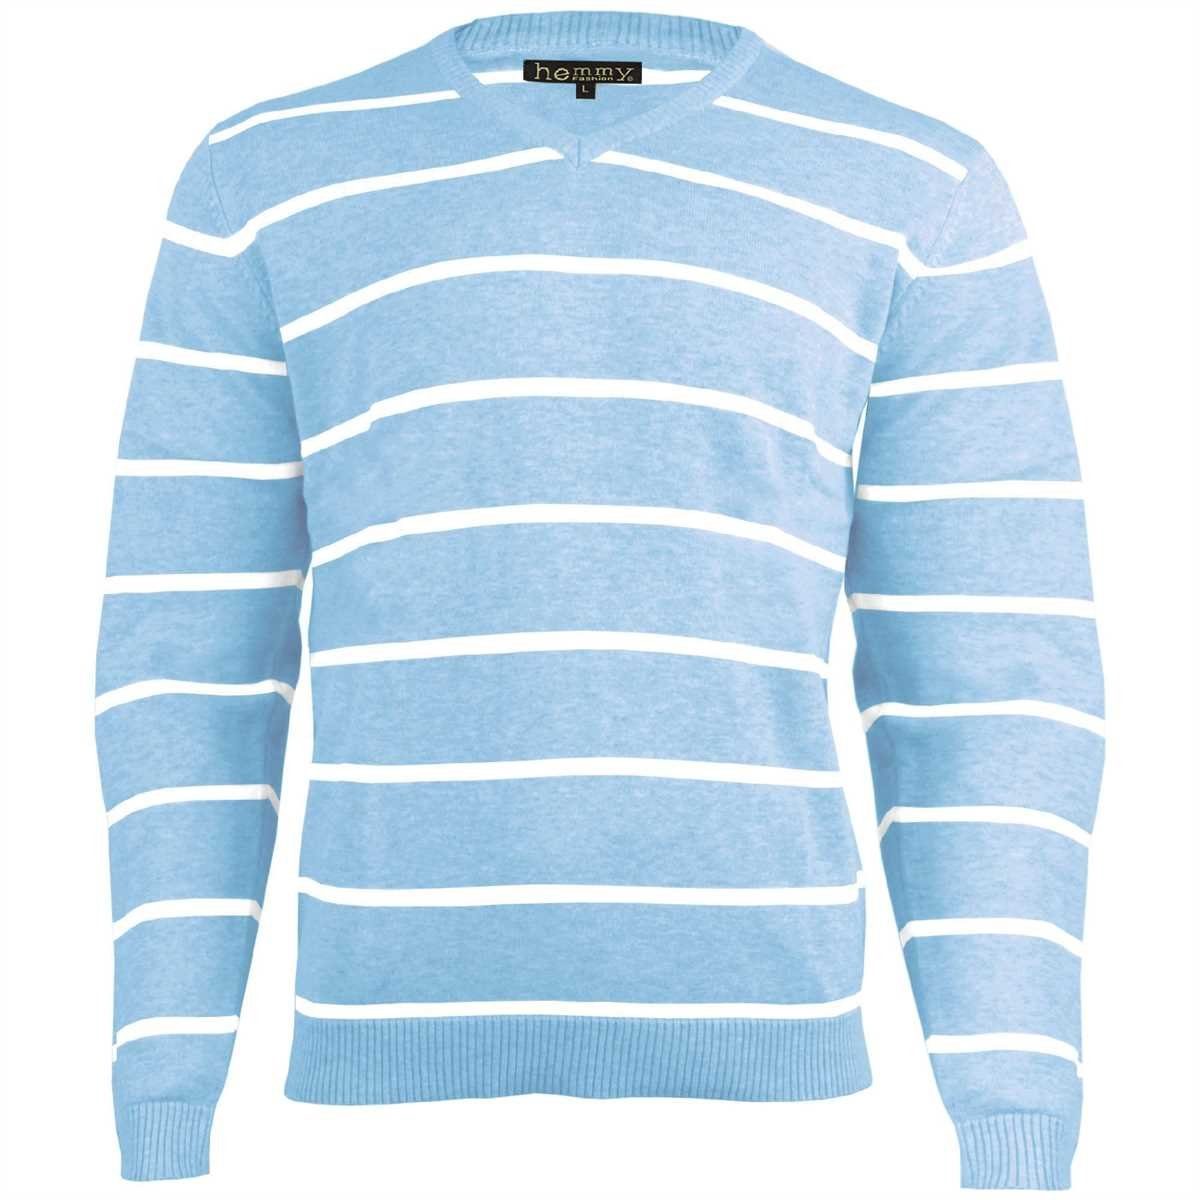 hemmy Fashion Streifenpullover Sweater Pulli Herrenpullover mit weißen  Streifen, versch. Ausführungen und Größen online kaufen | OTTO